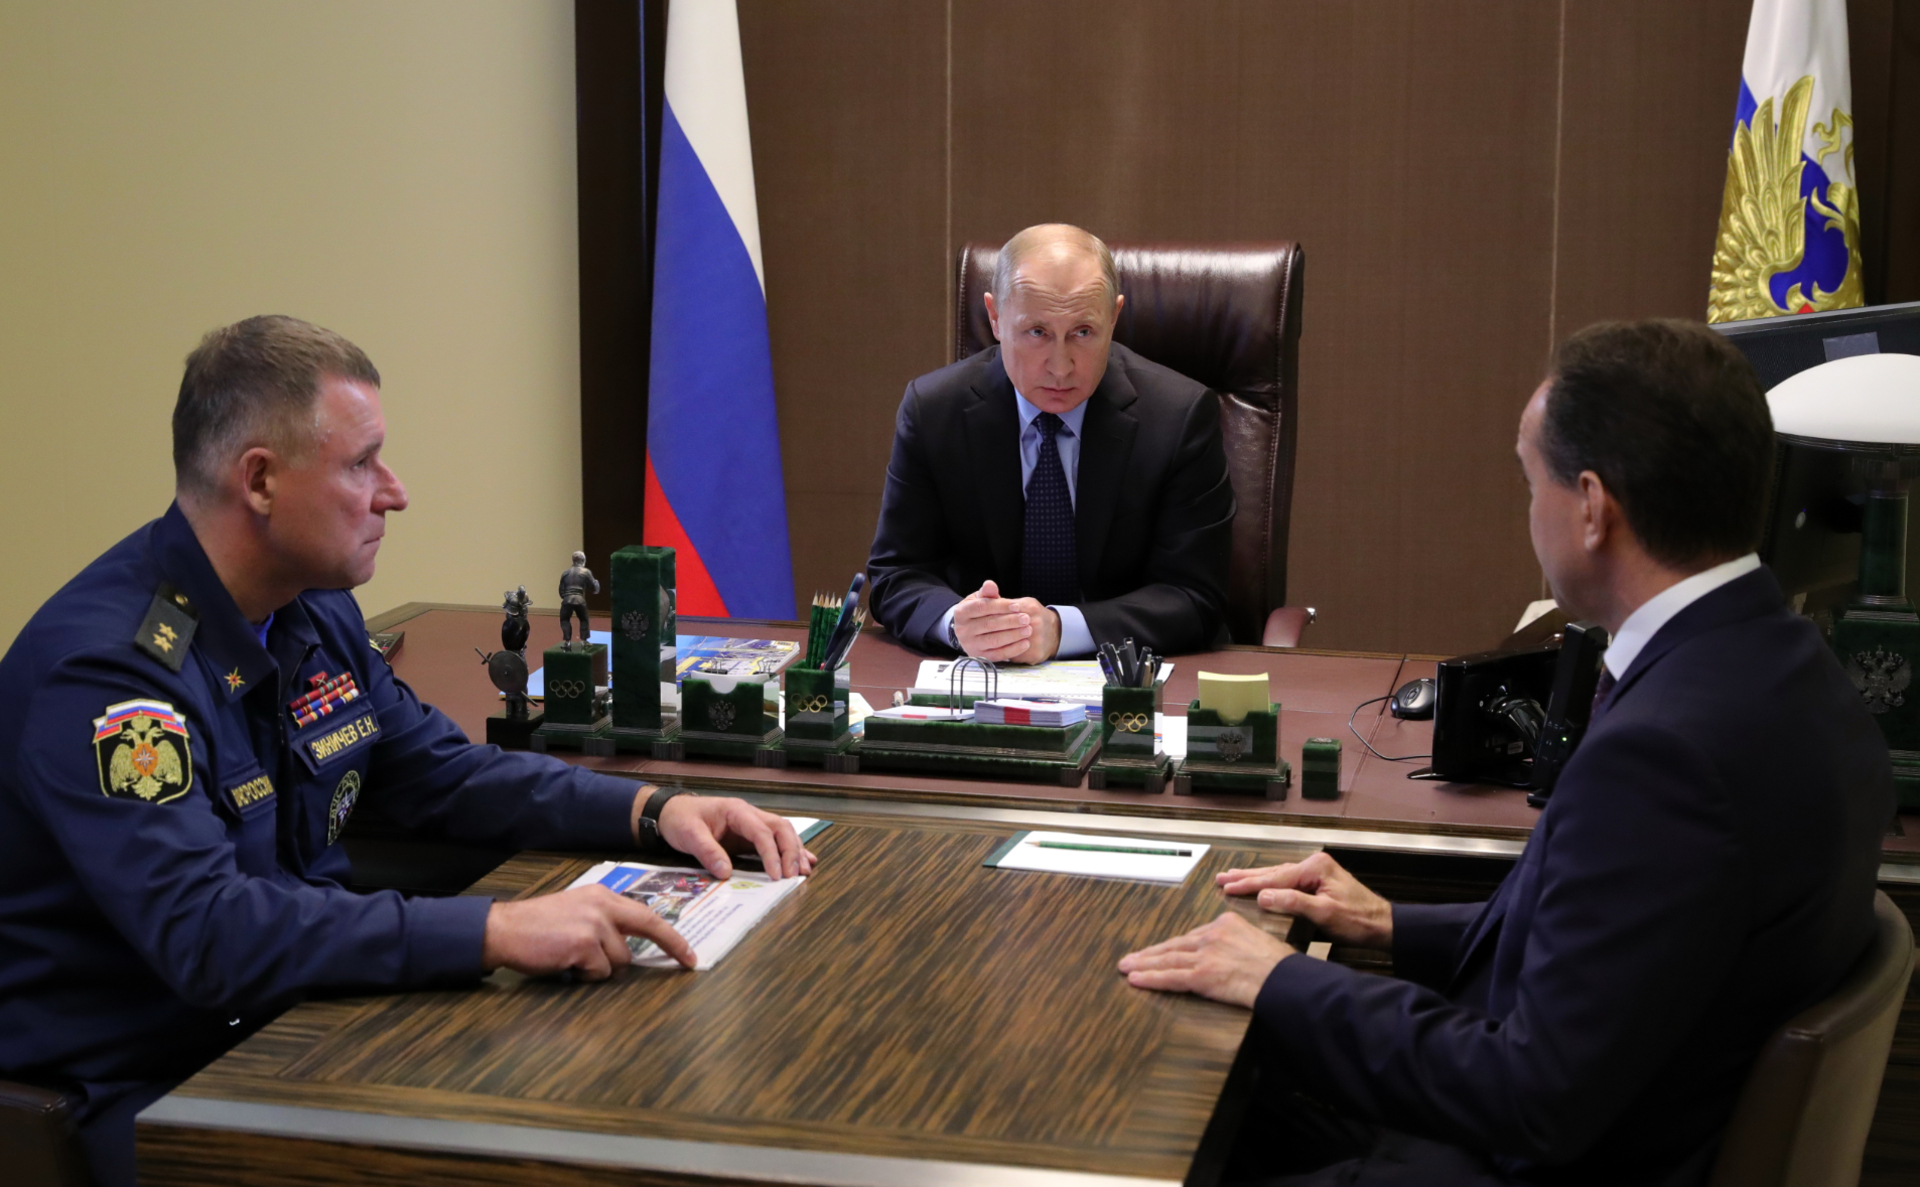 Президент РФ Владимир Путин, глава МЧС Евгений Зиничев (слева) и губернатор Краснодарского края Вениамин Кондратьев (справа) во время встречи 27 октября